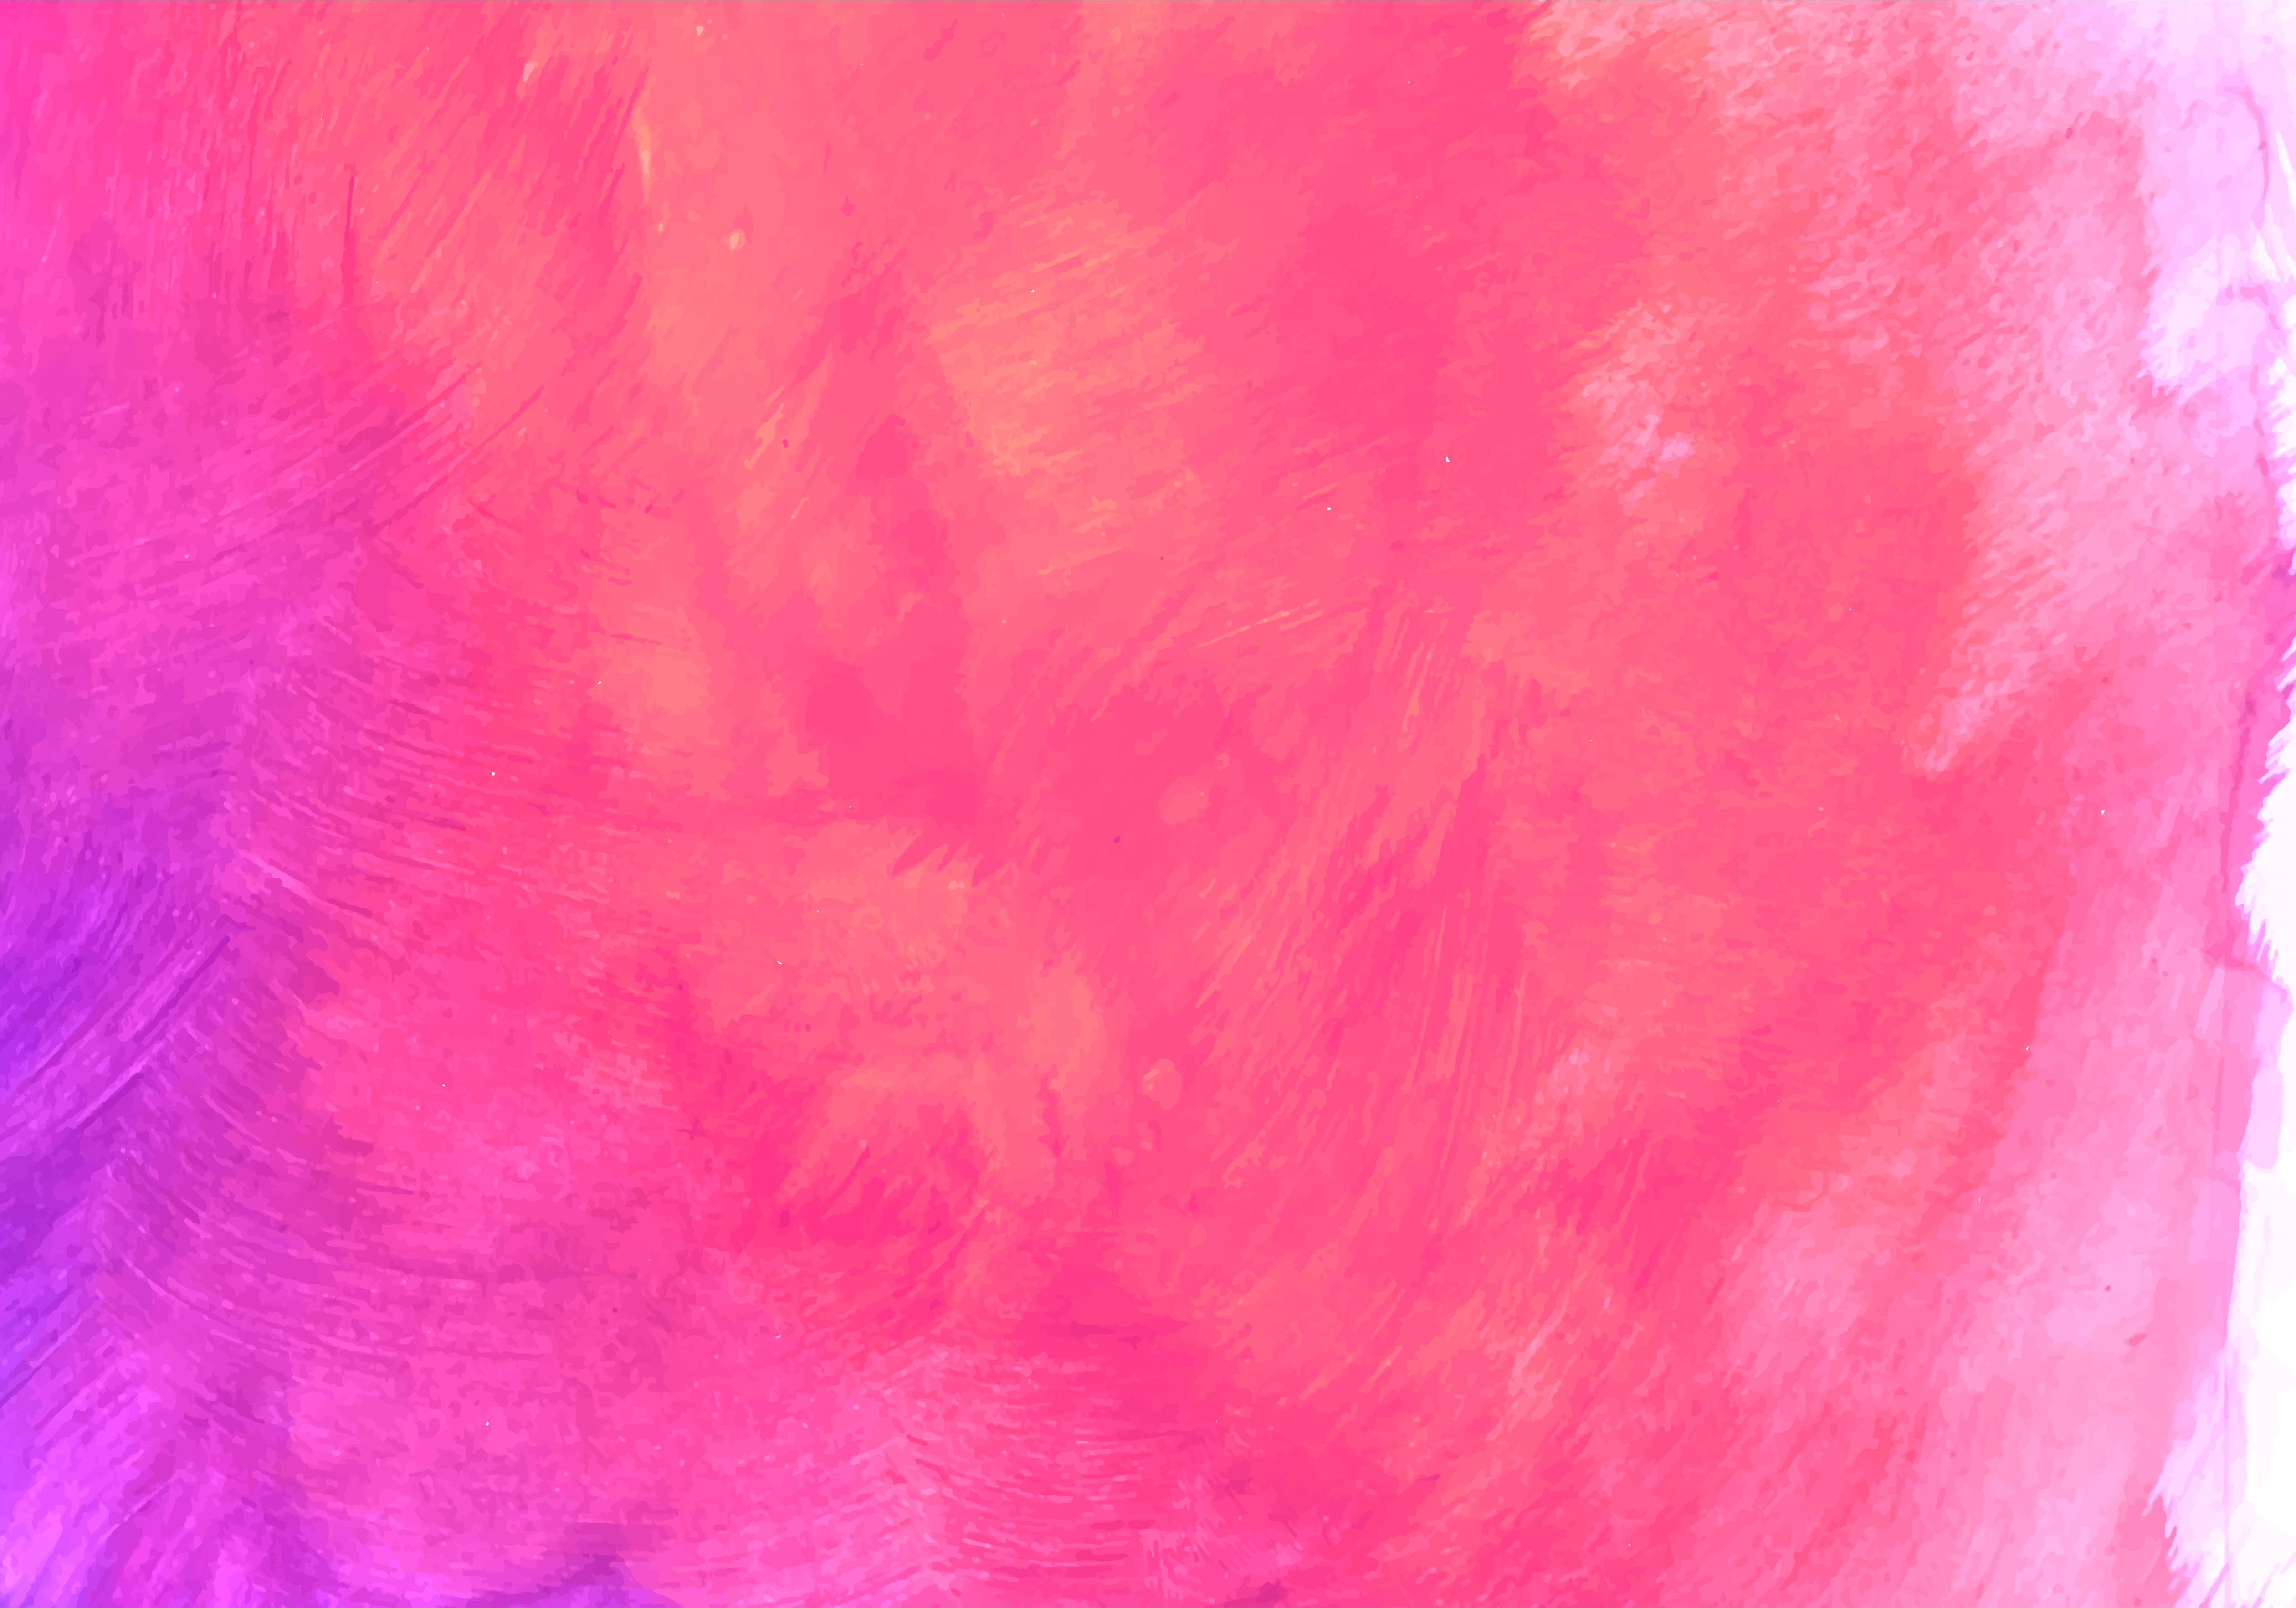 Tìm kiếm nền nước sơn màu cam hồng đầy phong cách và nghệ thuật trên Vector 1225971! Những họa tiết tuyệt đẹp sẽ làm cho các thiết kế của bạn trở nên độc đáo và đầy ấn tượng. Không nên bỏ qua cơ hội nhận được bộ sưu tập này và trang trí cho các dự án của bạn với sự nổi bật đầy màu sắc!